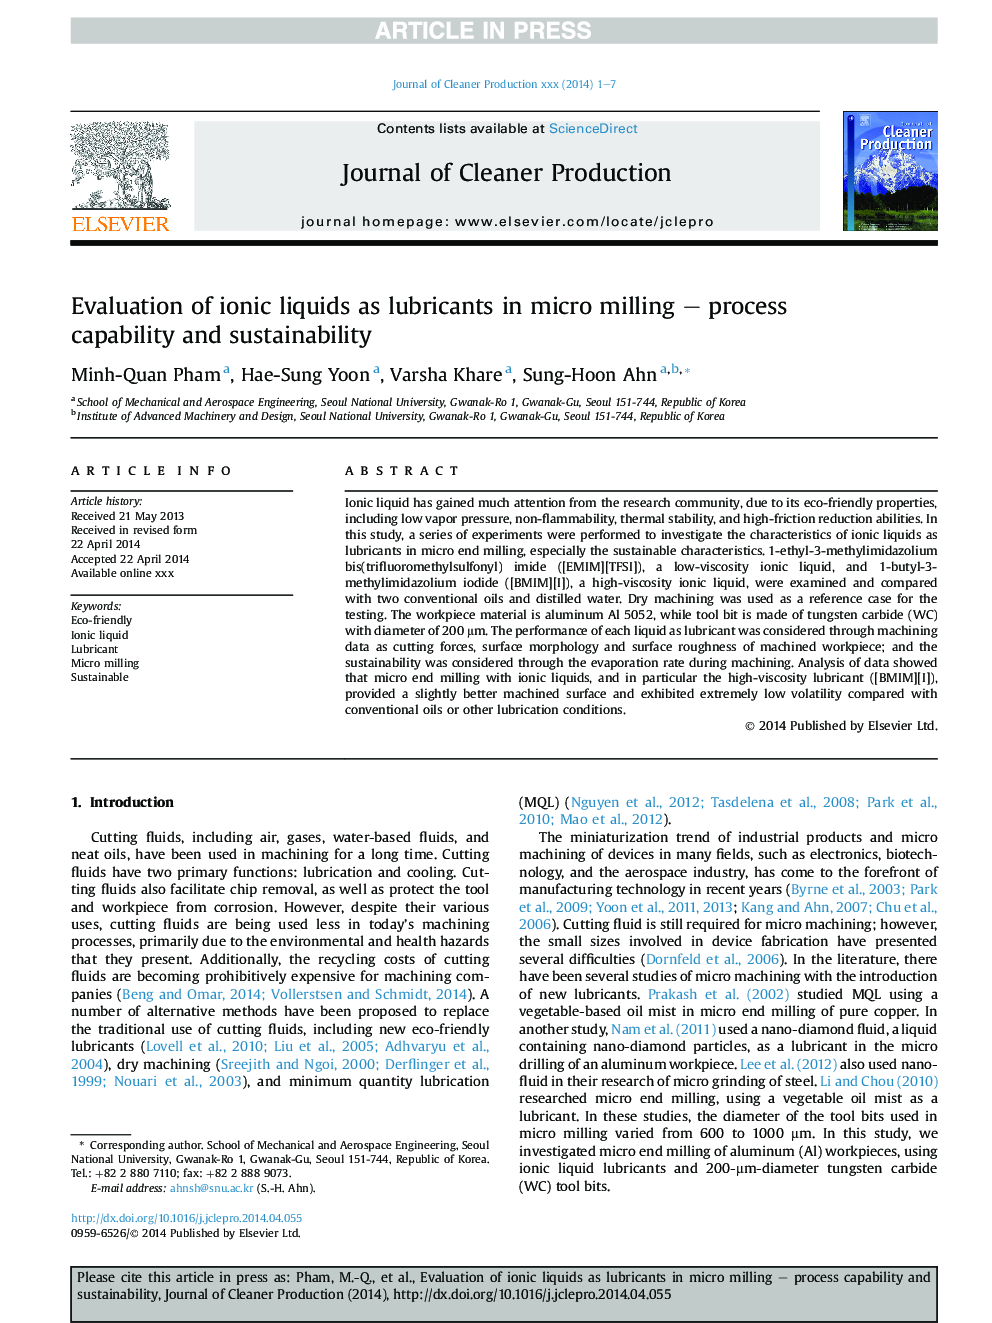 ارزیابی مایعات یونی به عنوان روانکاری در میکرو آسیاب - قابلیت فرآیند و پایداری 